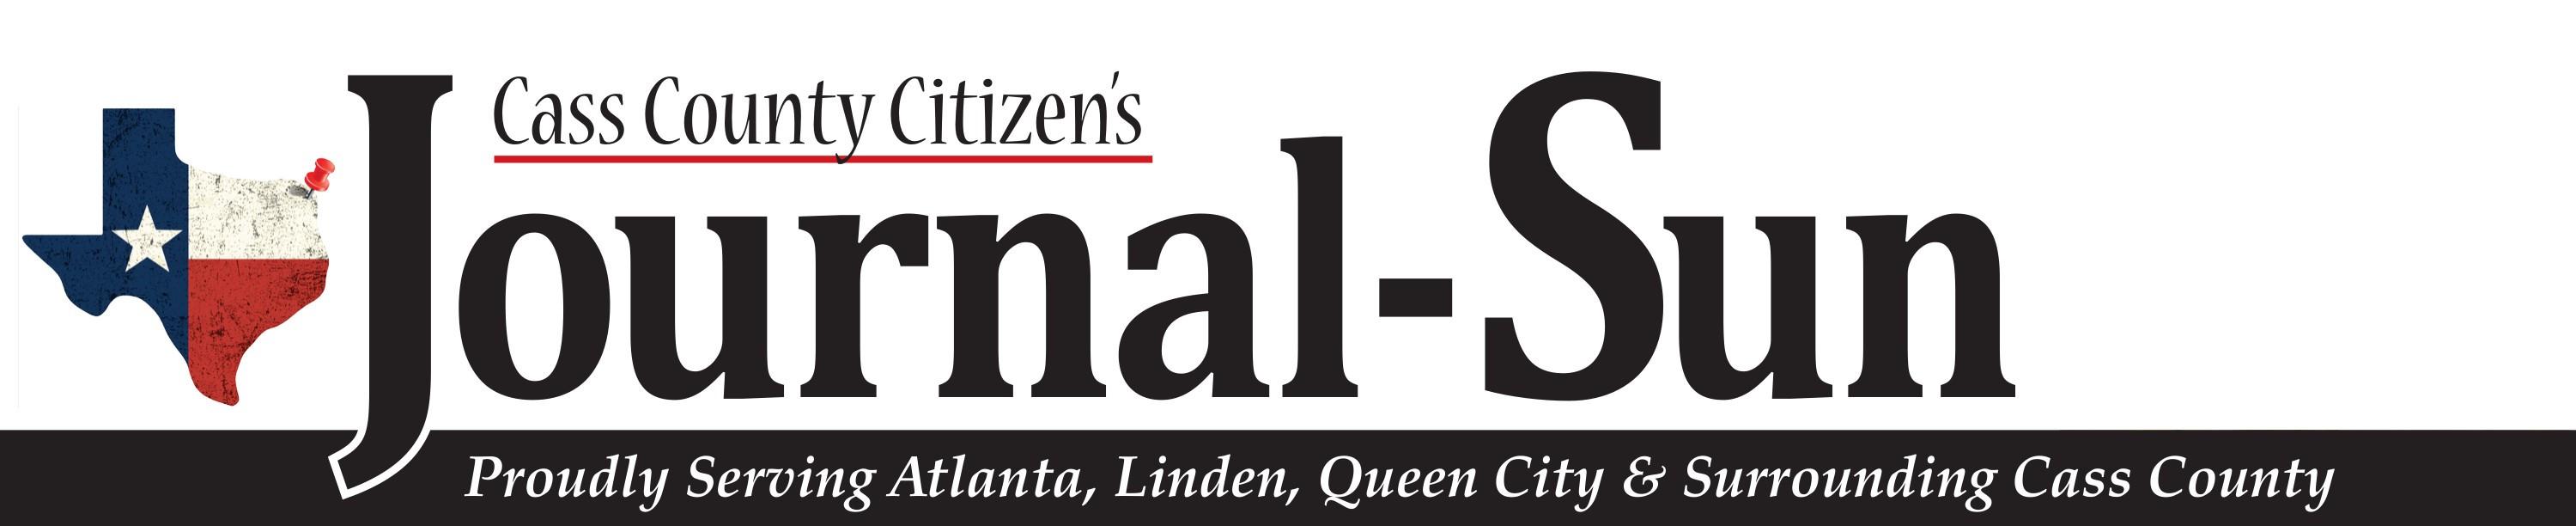 Cass County Citizens Journal-Sun Logo